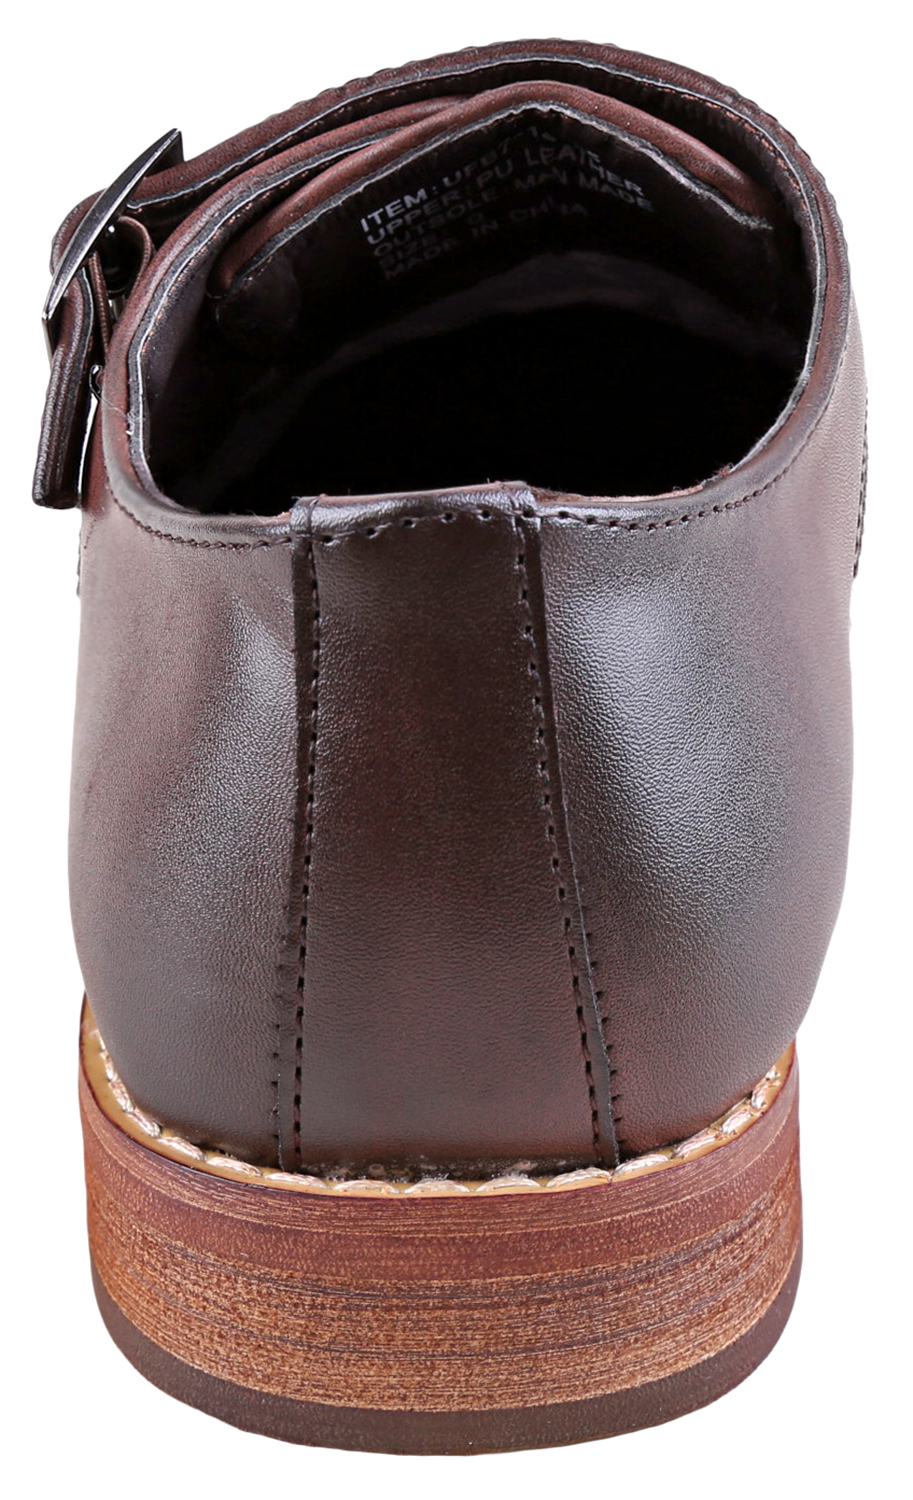 Urban Fox Allen Men's Dress Shoe | Double Monk Strap | Brogue | Wingtip Shoes for Men | Dark Brown 10 M US - image 4 of 7